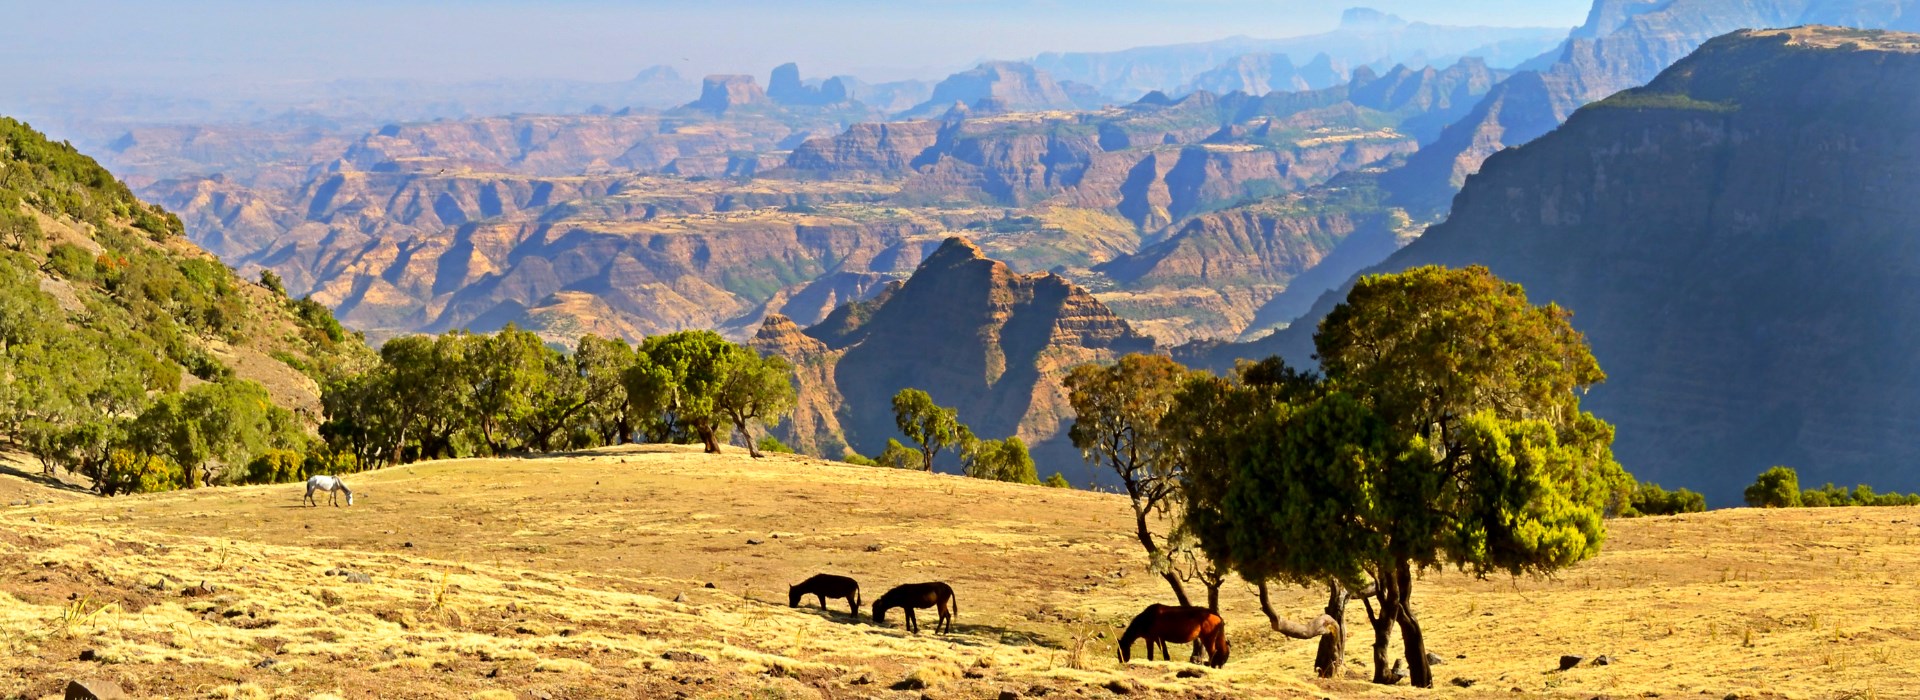 Visiter Le parc national de Simien - Ethiopie